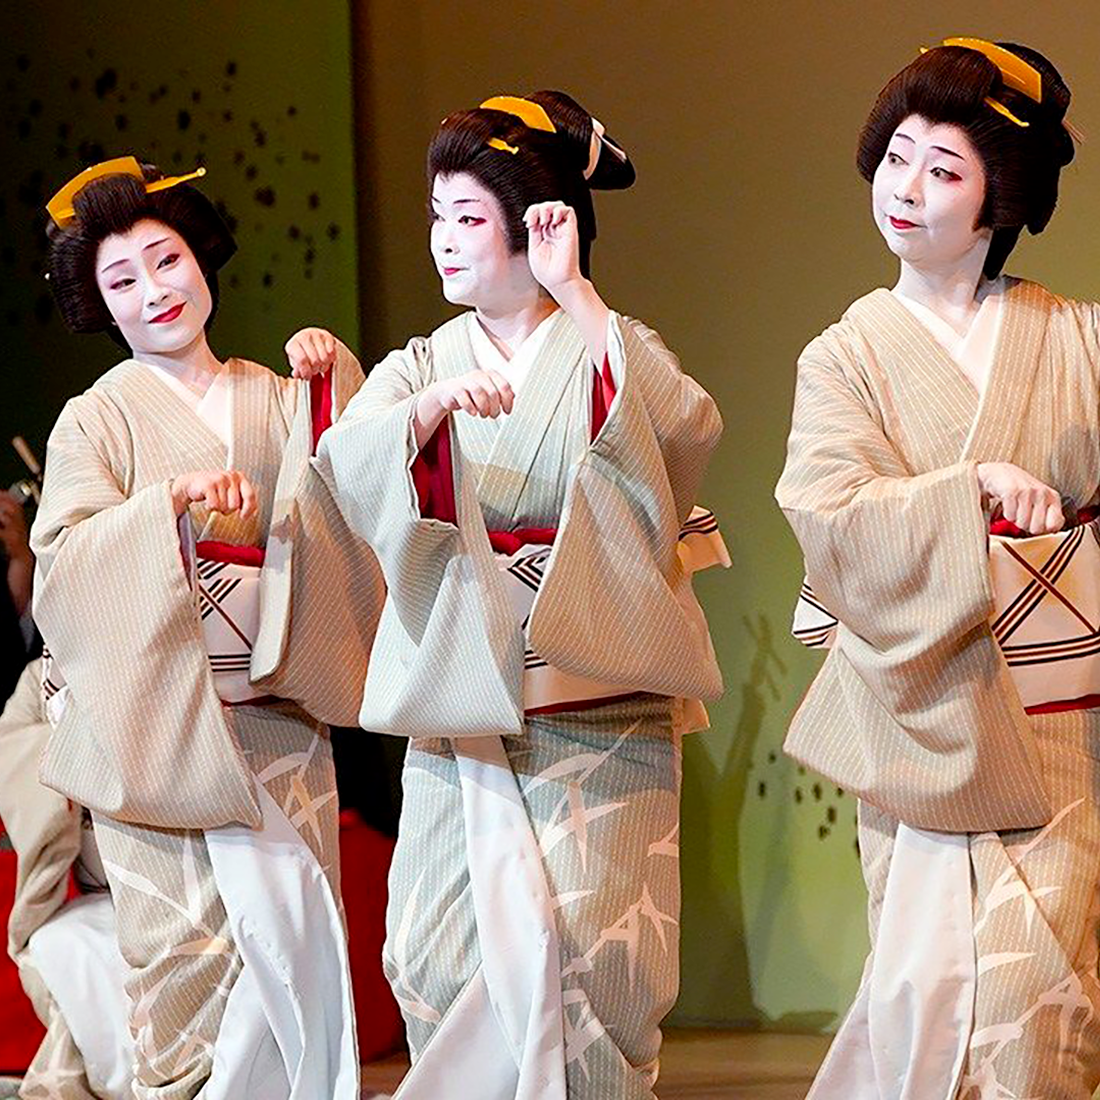 Tros geishas